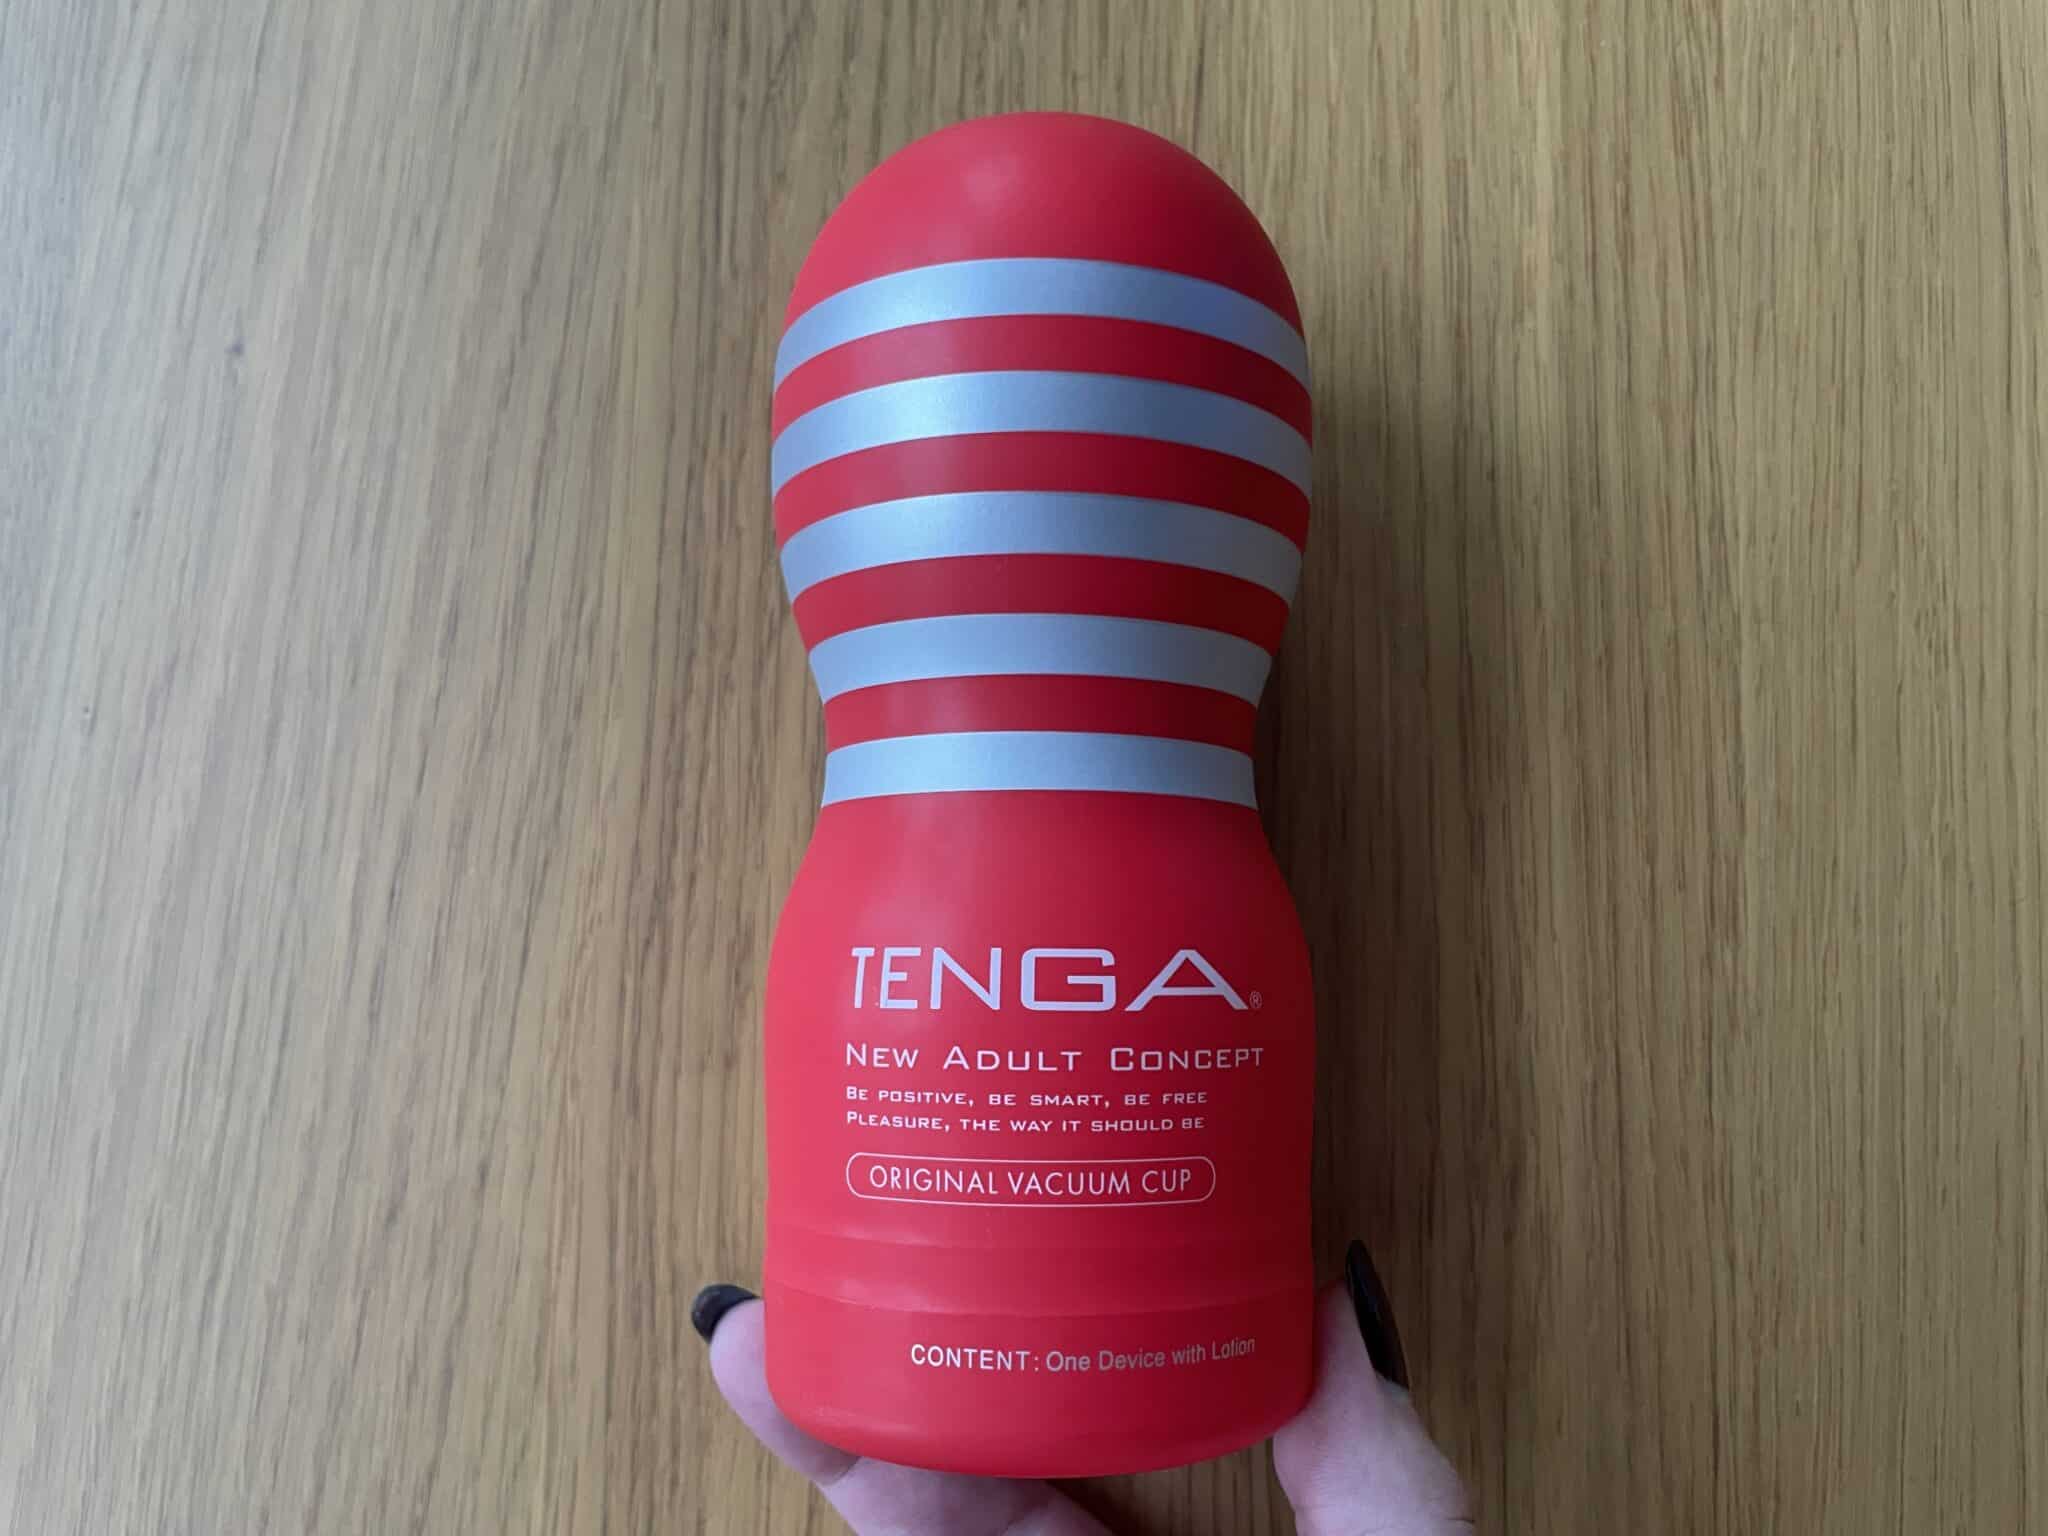 TENGA Original Vacuum Cup Packaging: Adding Value or Just Fluff?